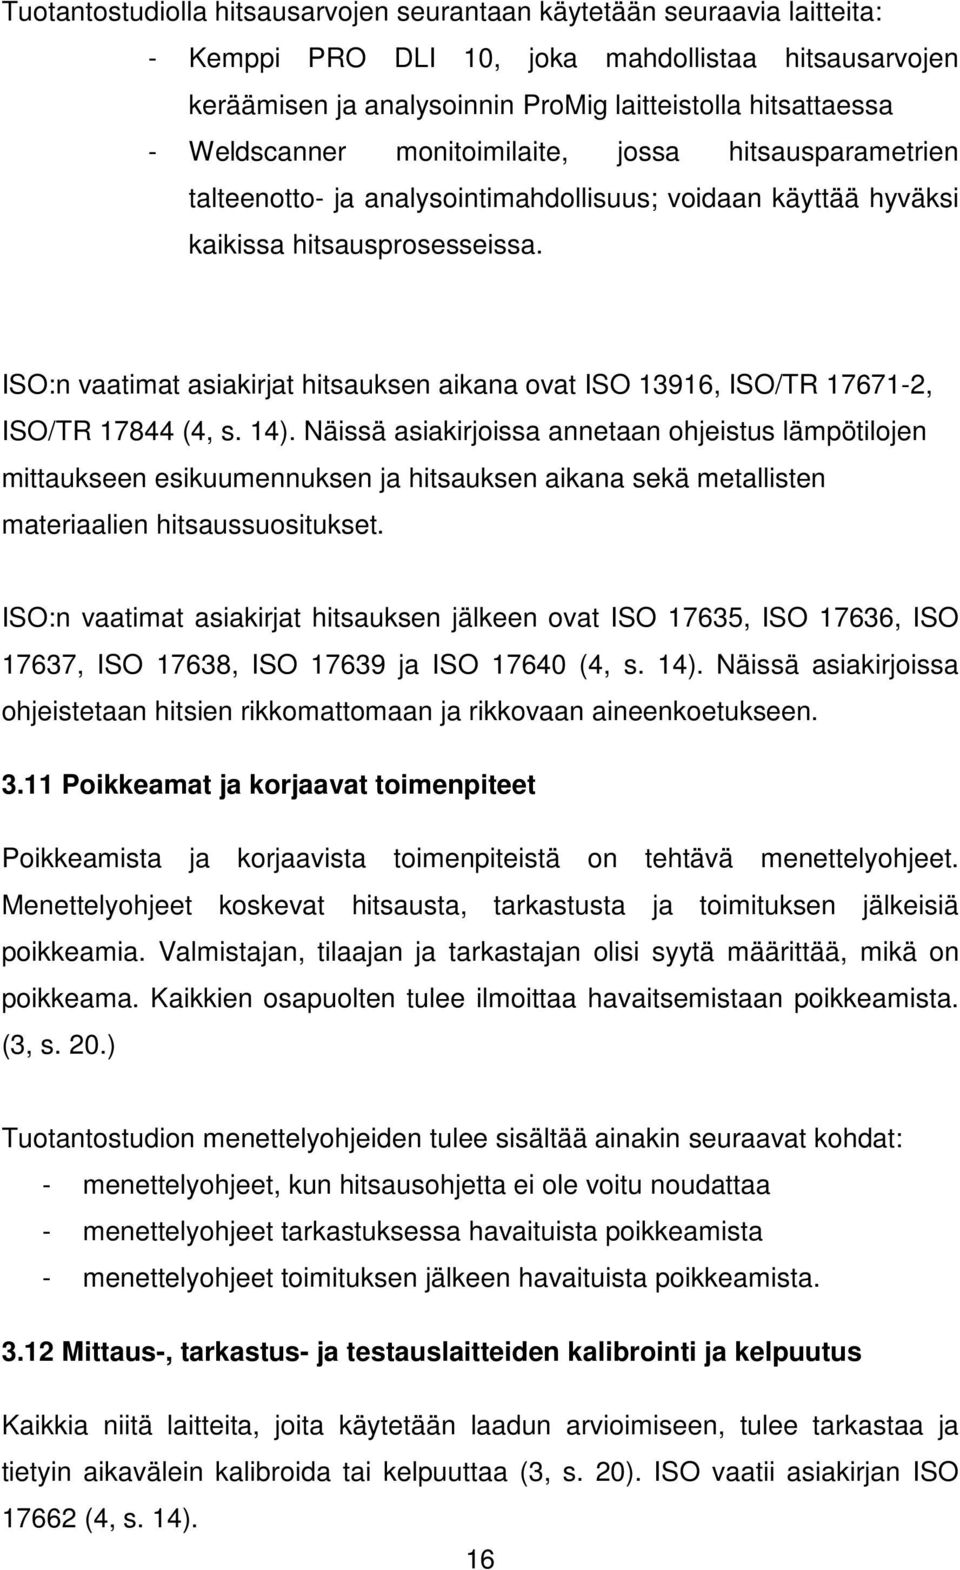 ISO:n vaatimat asiakirjat hitsauksen aikana ovat ISO 13916, ISO/TR 17671-2, ISO/TR 17844 (4, s. 14).